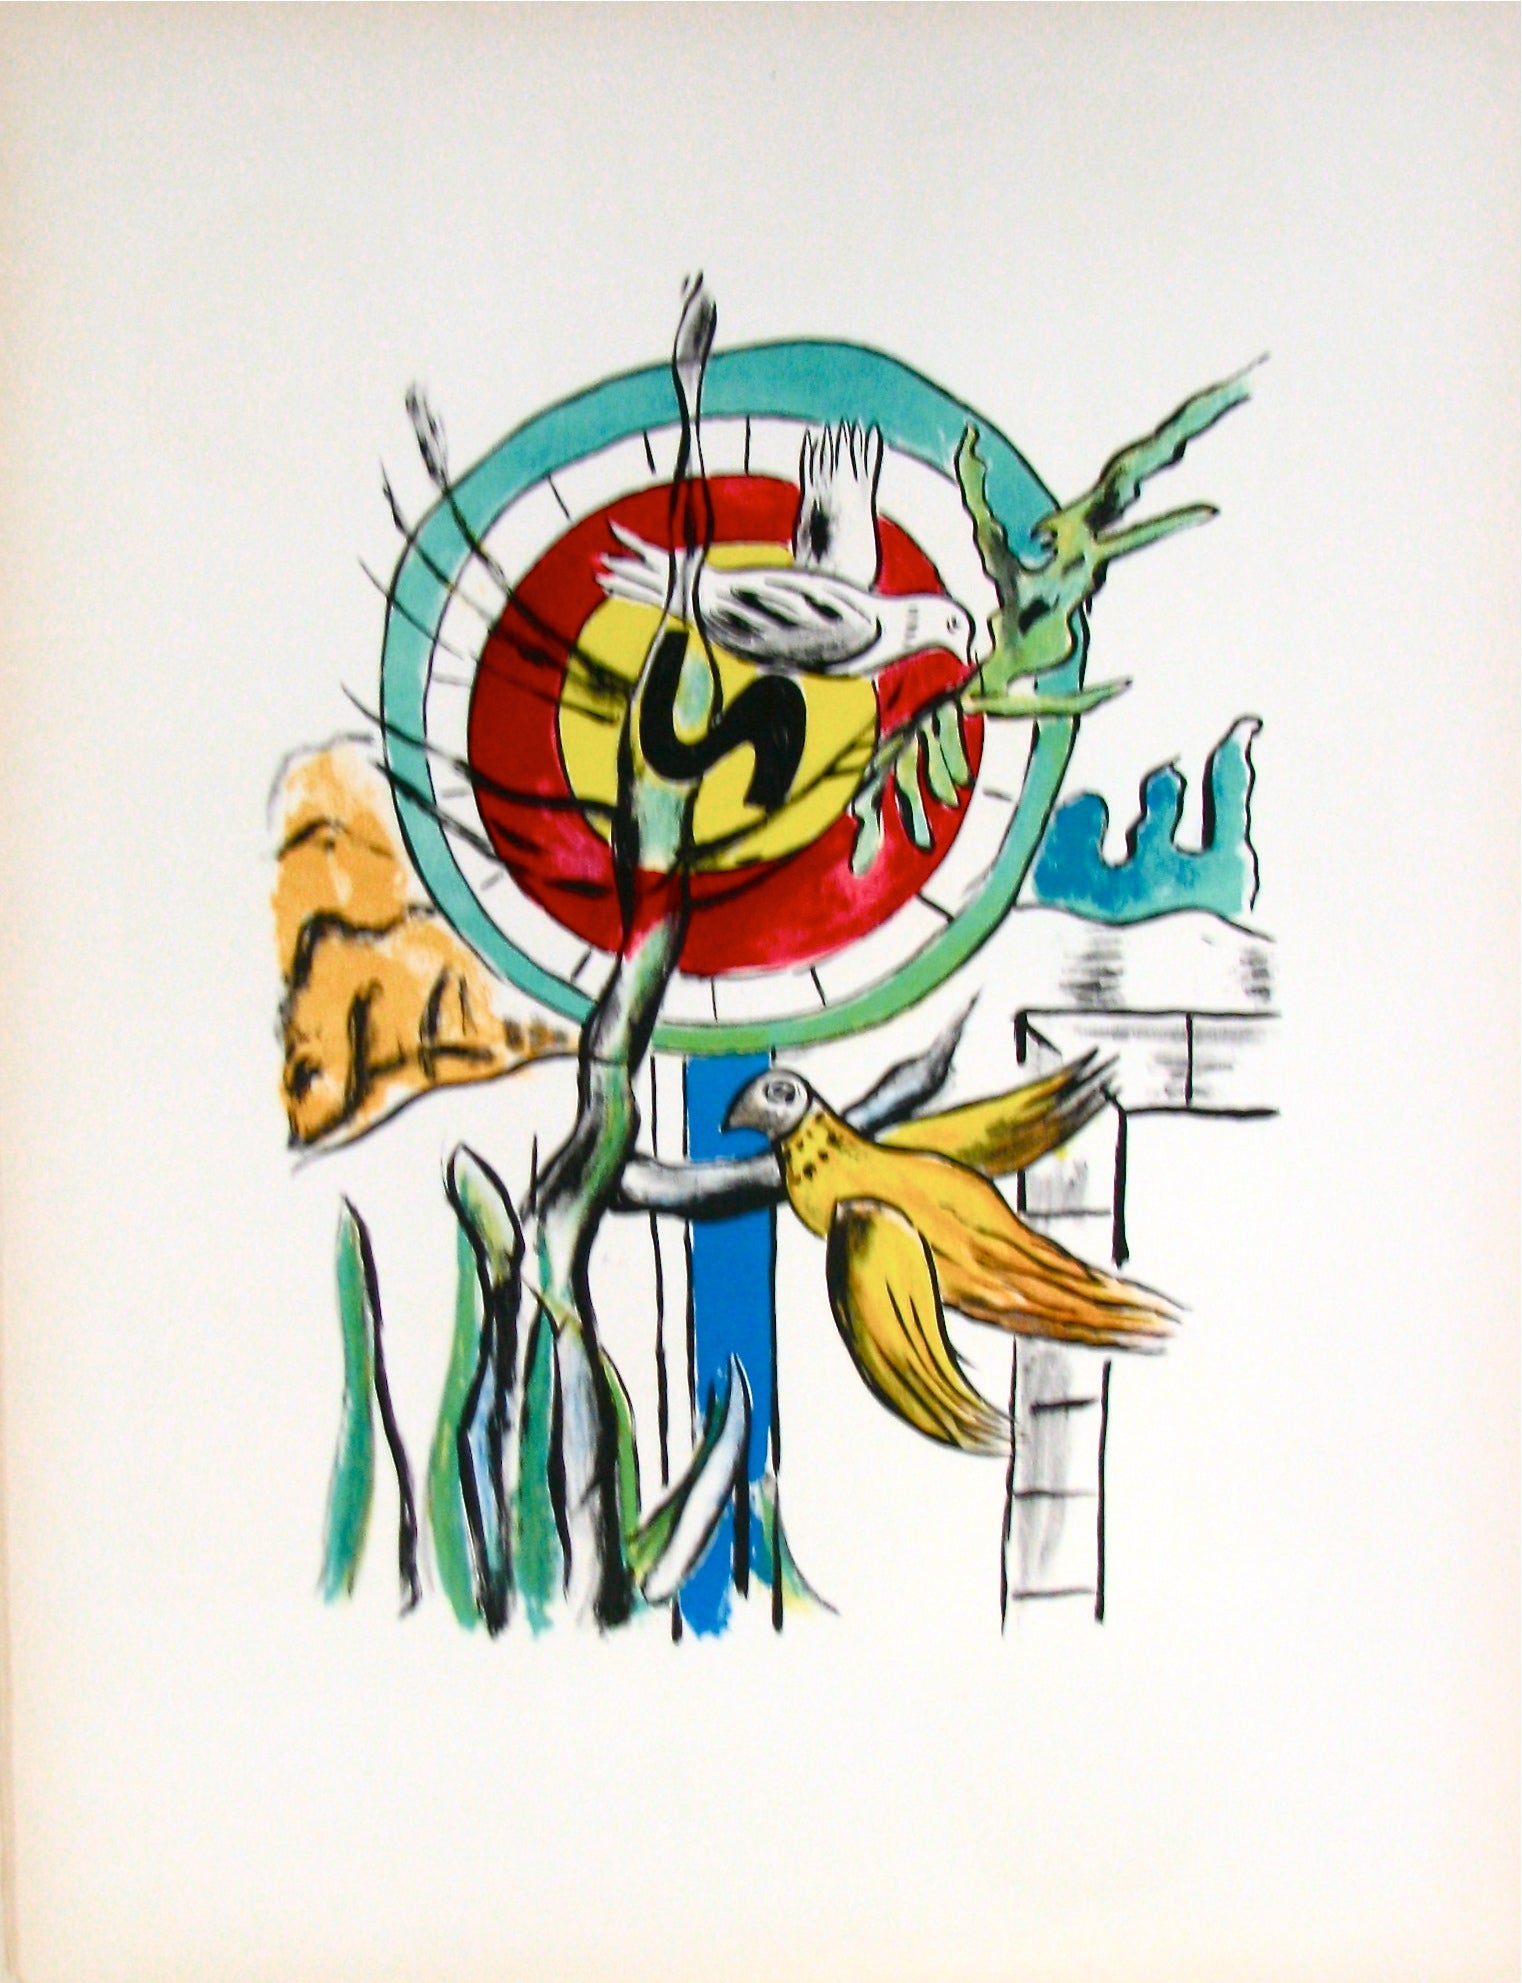 Les Deux Oiseaux - "La Ville" (after) Fernand Leger, 1959 - Mourlot Editions - Fine_Art - Poster - Lithograph - Wall Art - Vintage - Prints - Original